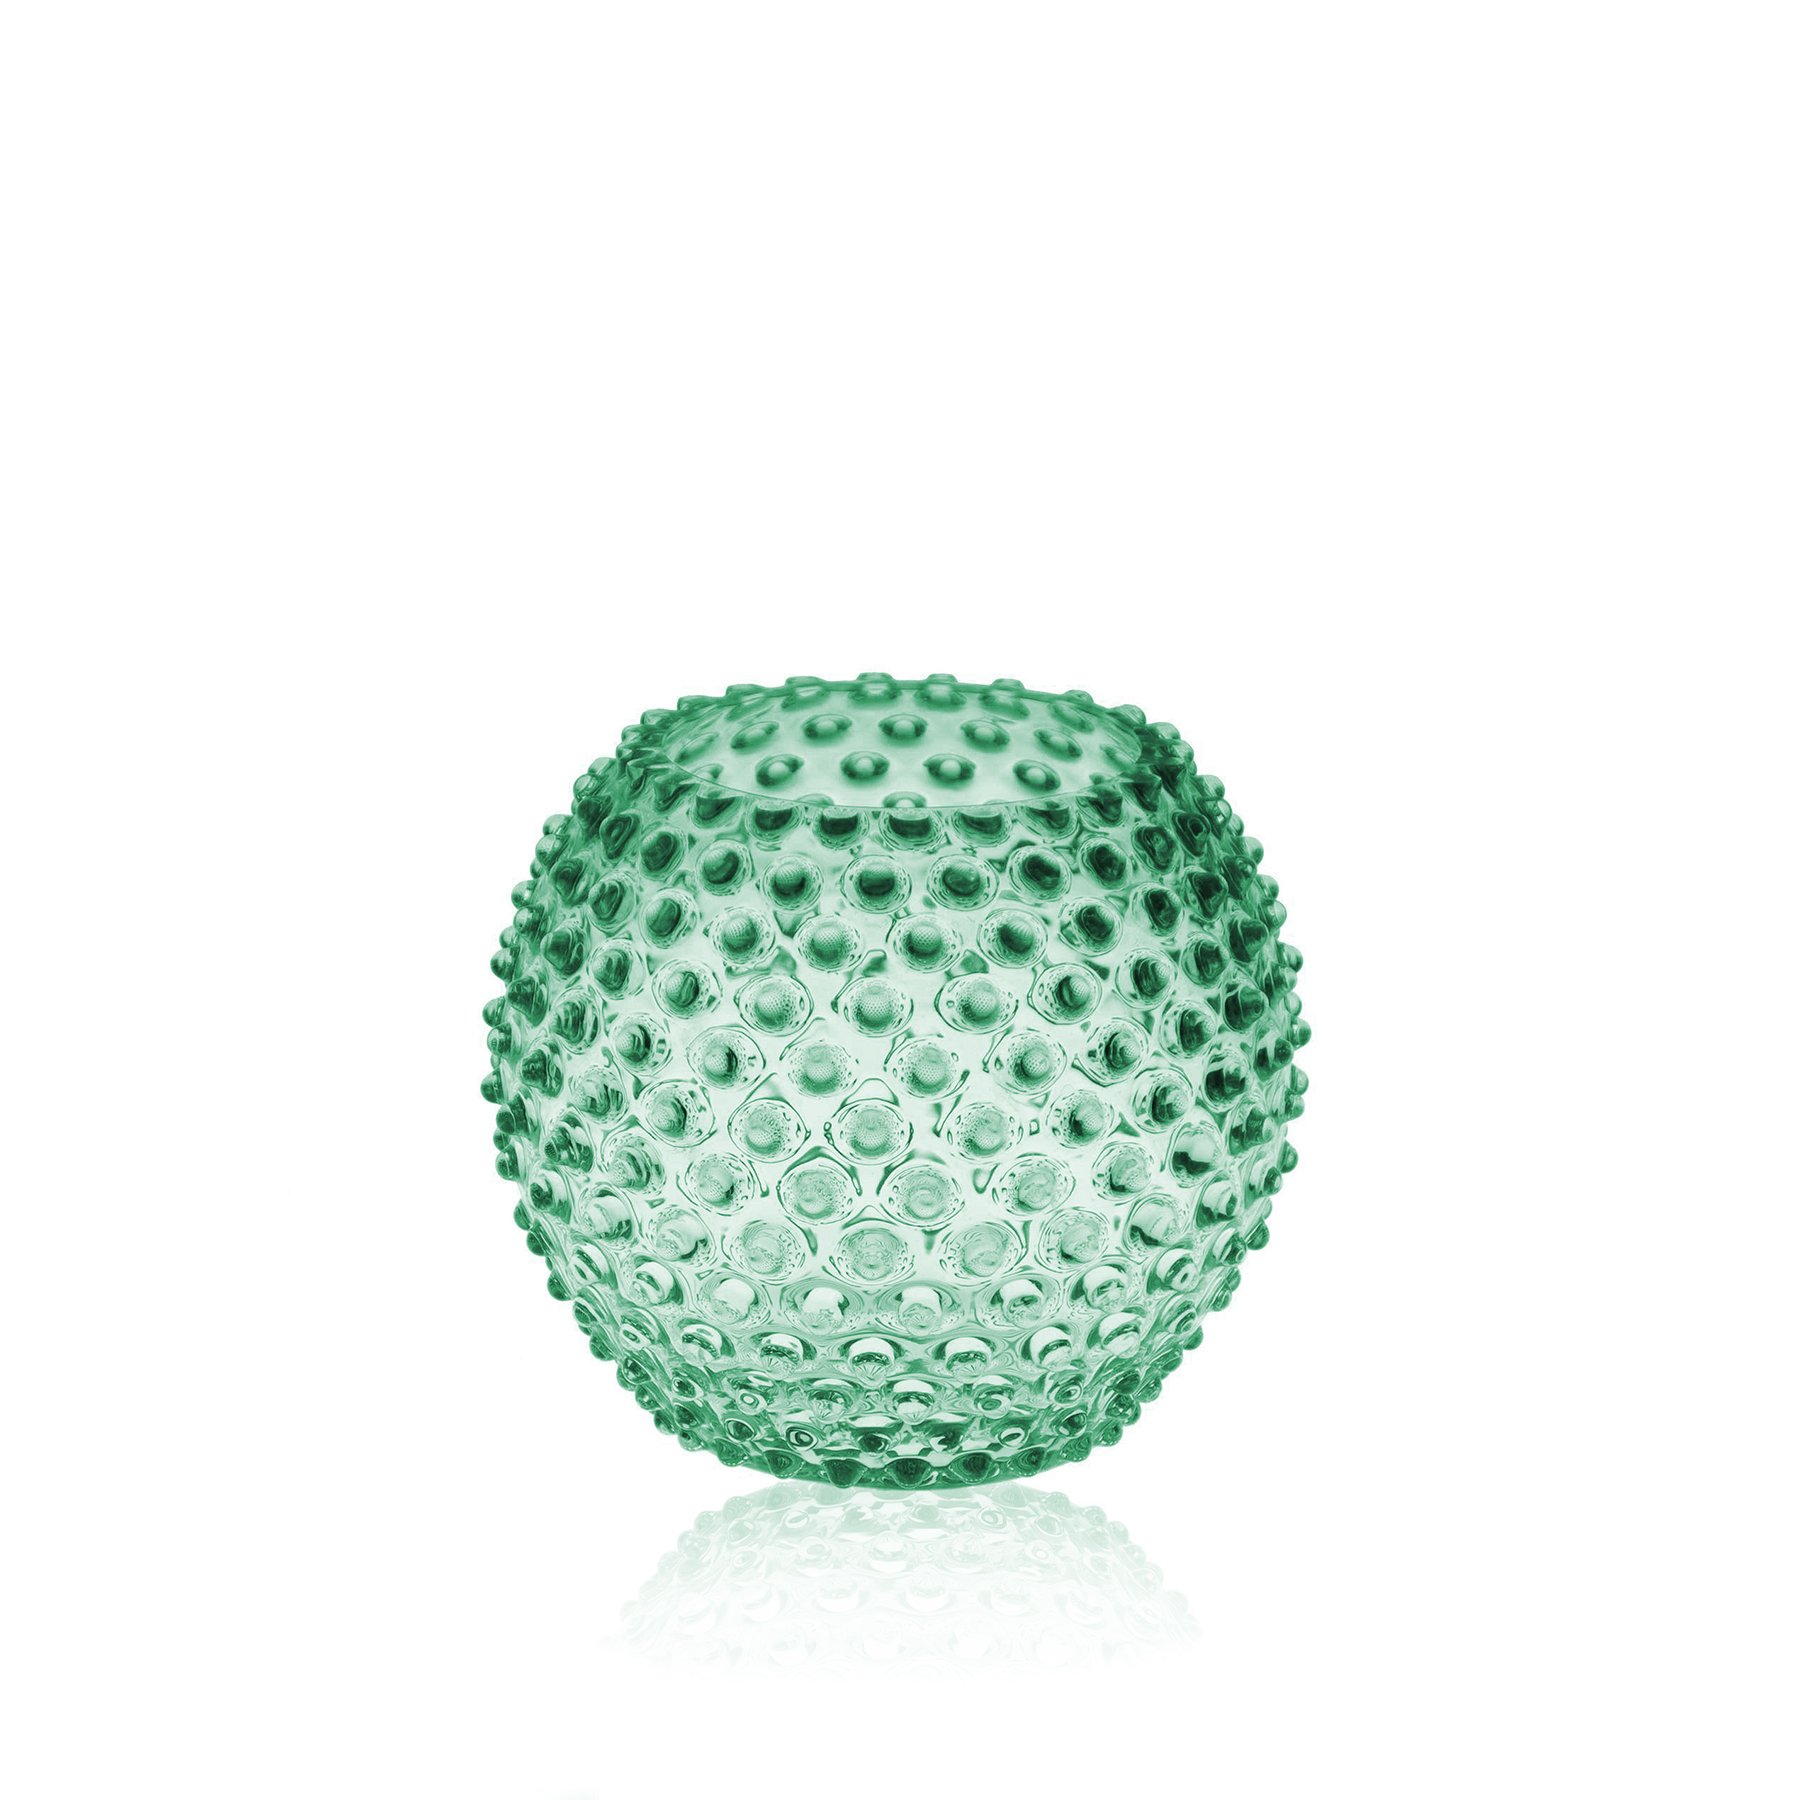 Or &Wonder Collection Teal Green Hobnail Crystal Vase